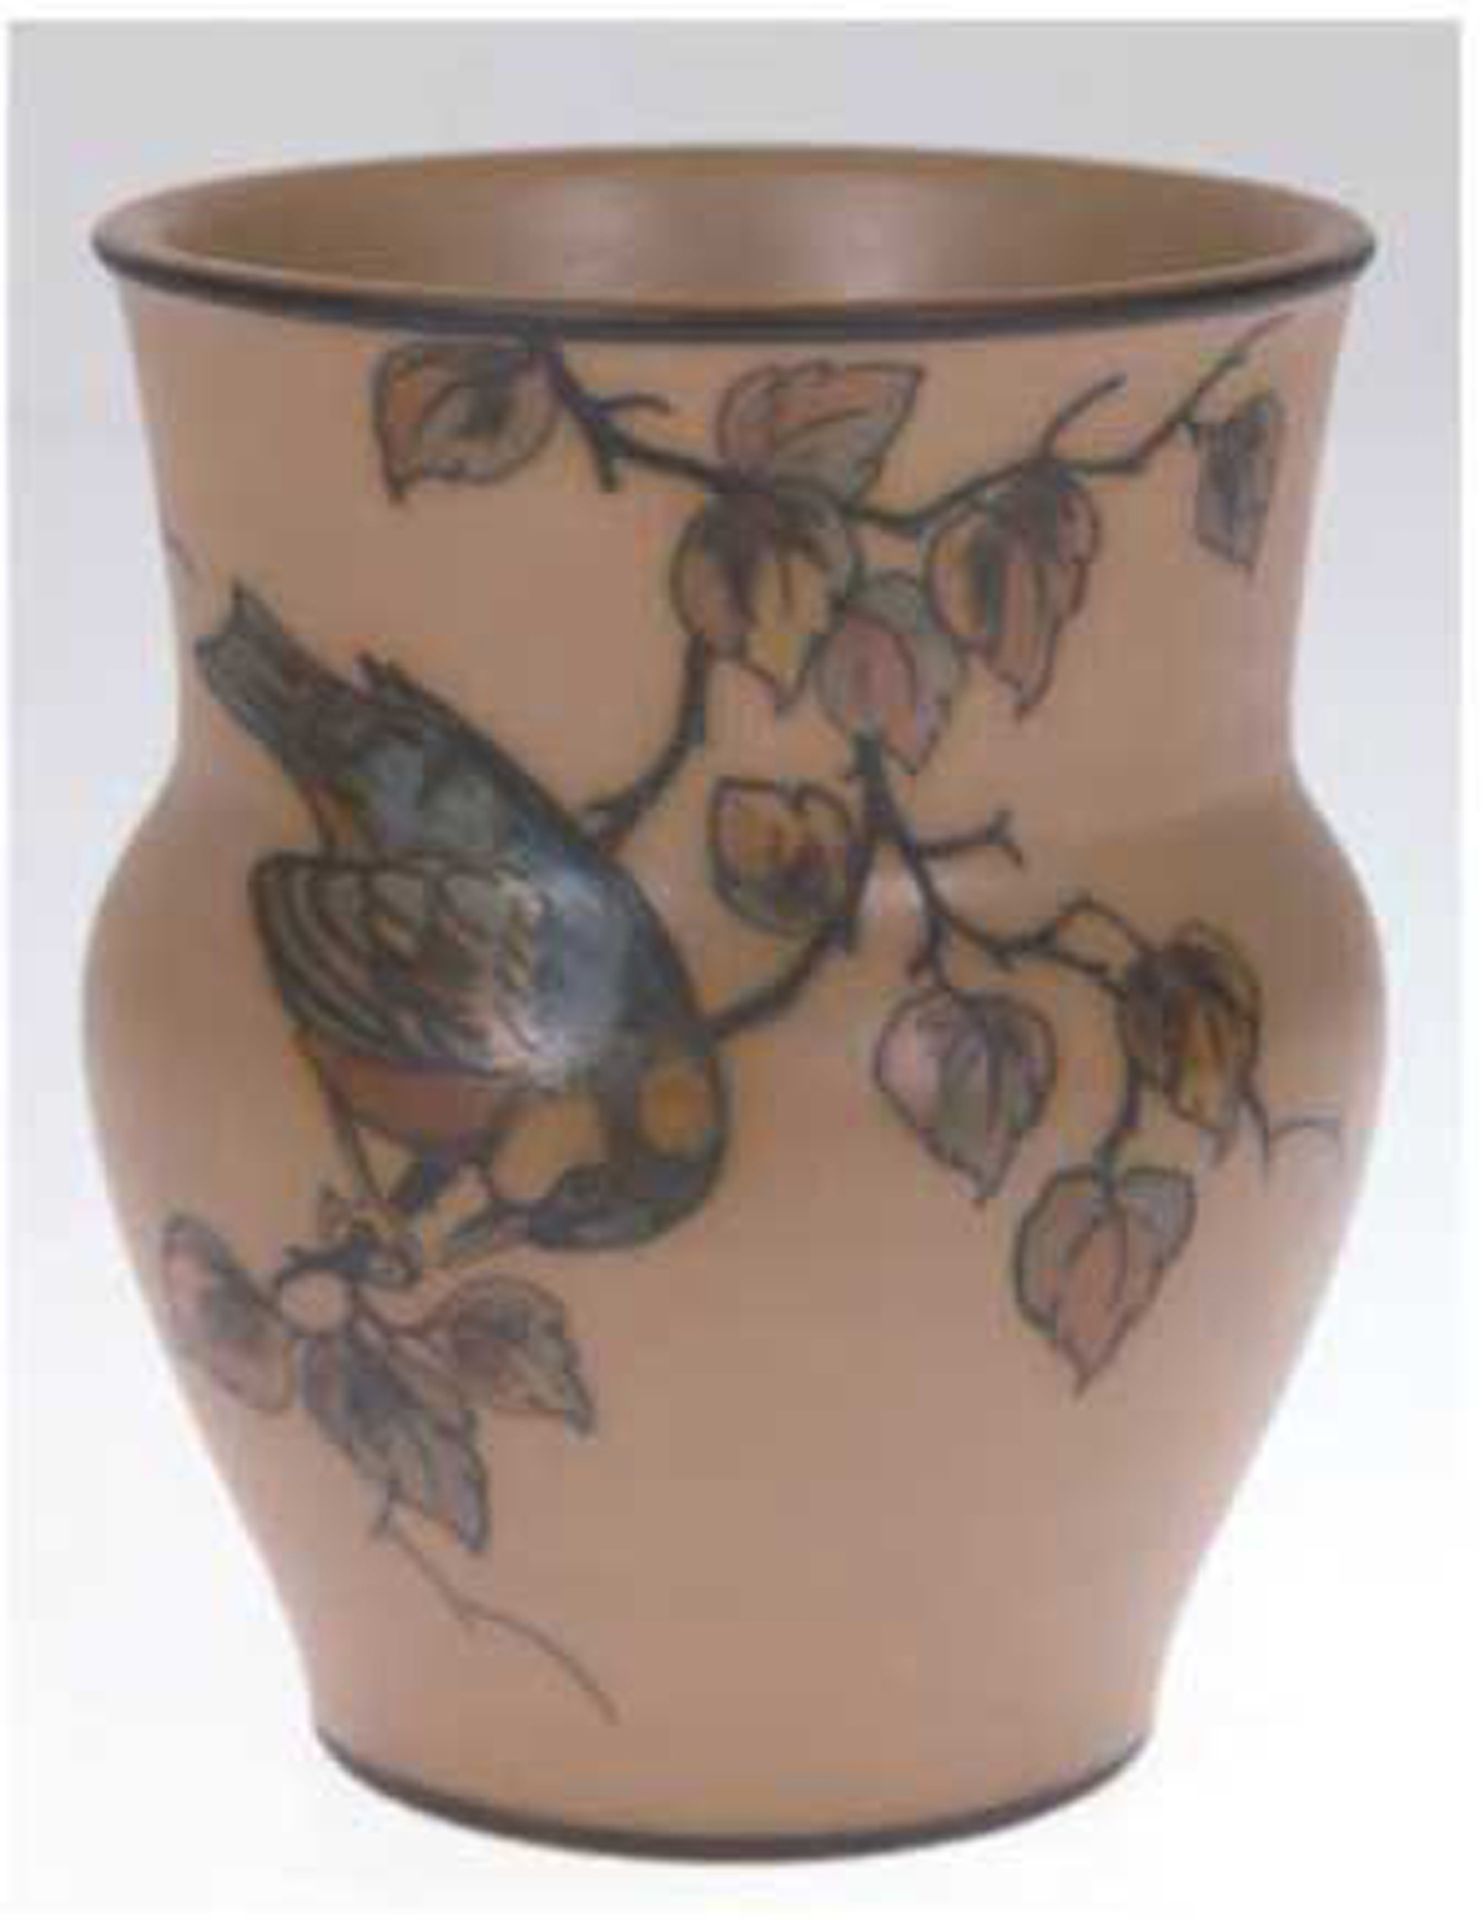 Keramik-Vase "Meise auf Ast", L. Hjorth, Bornholm, Floral-und Tiermalerei auf braunem Grund, unters